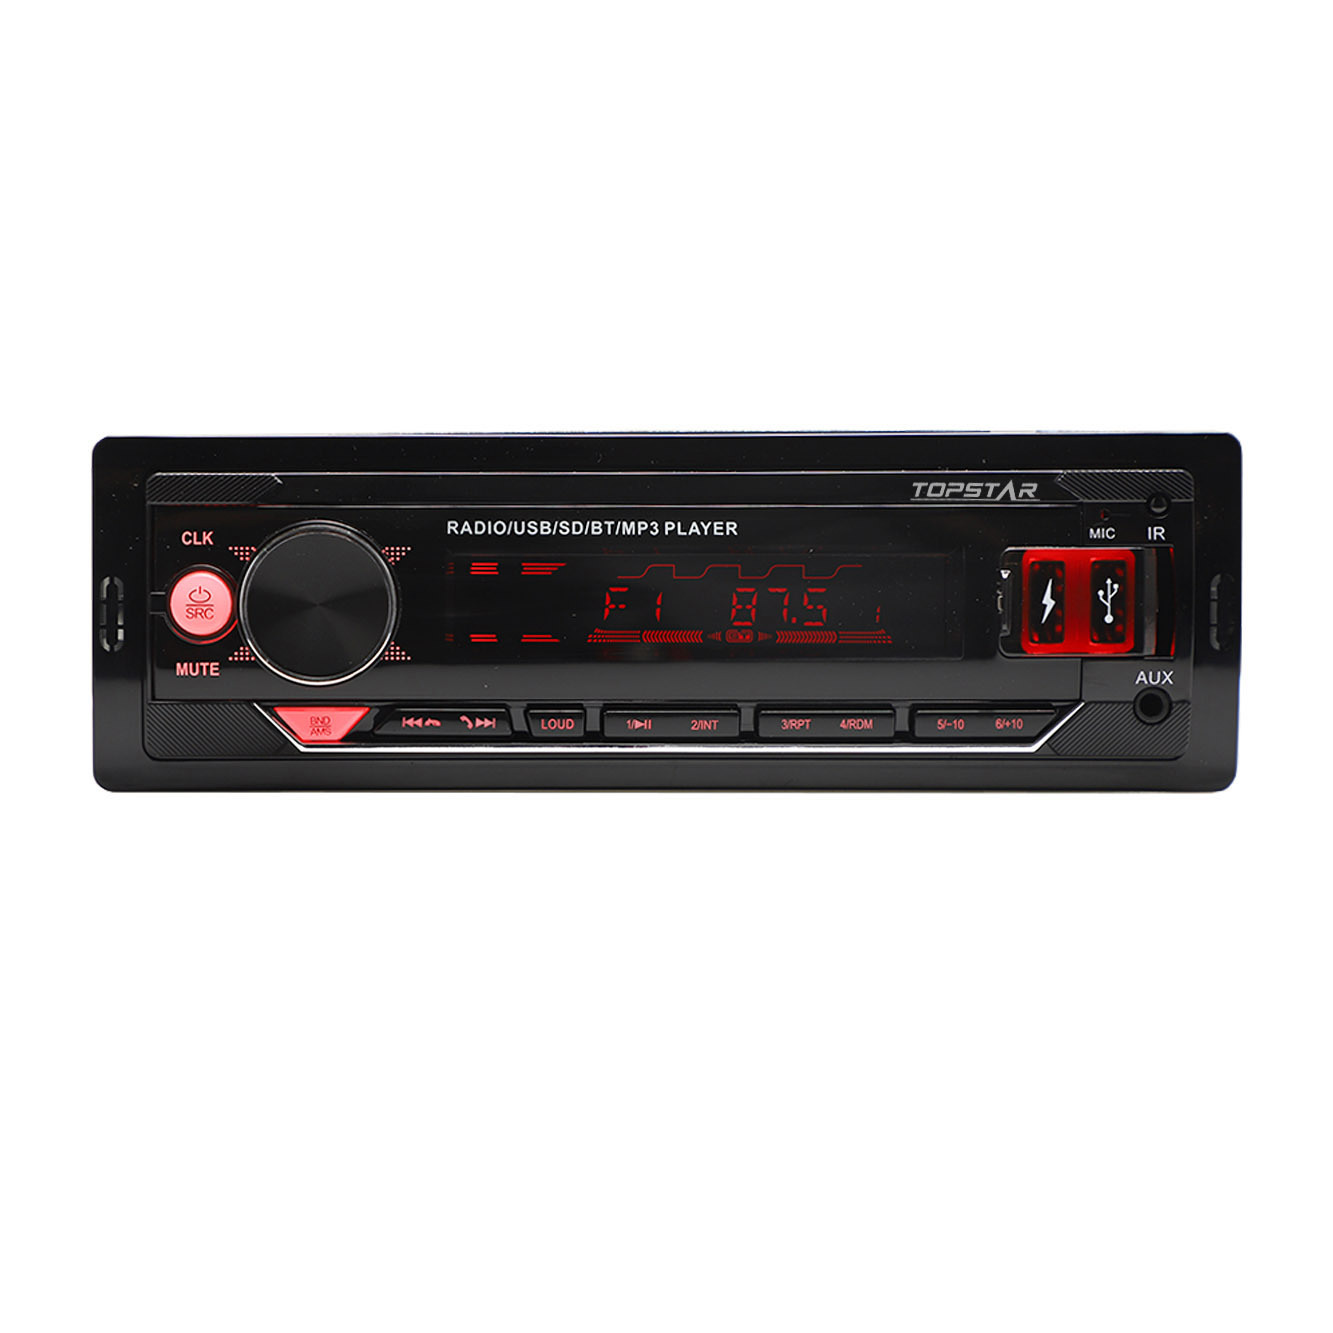 عالية الجودة راديو السيارة لوحة ثابتة لاعب سيارة ستيريو سيارة فيديو متعدد الألوان سيارة مشغل MP3